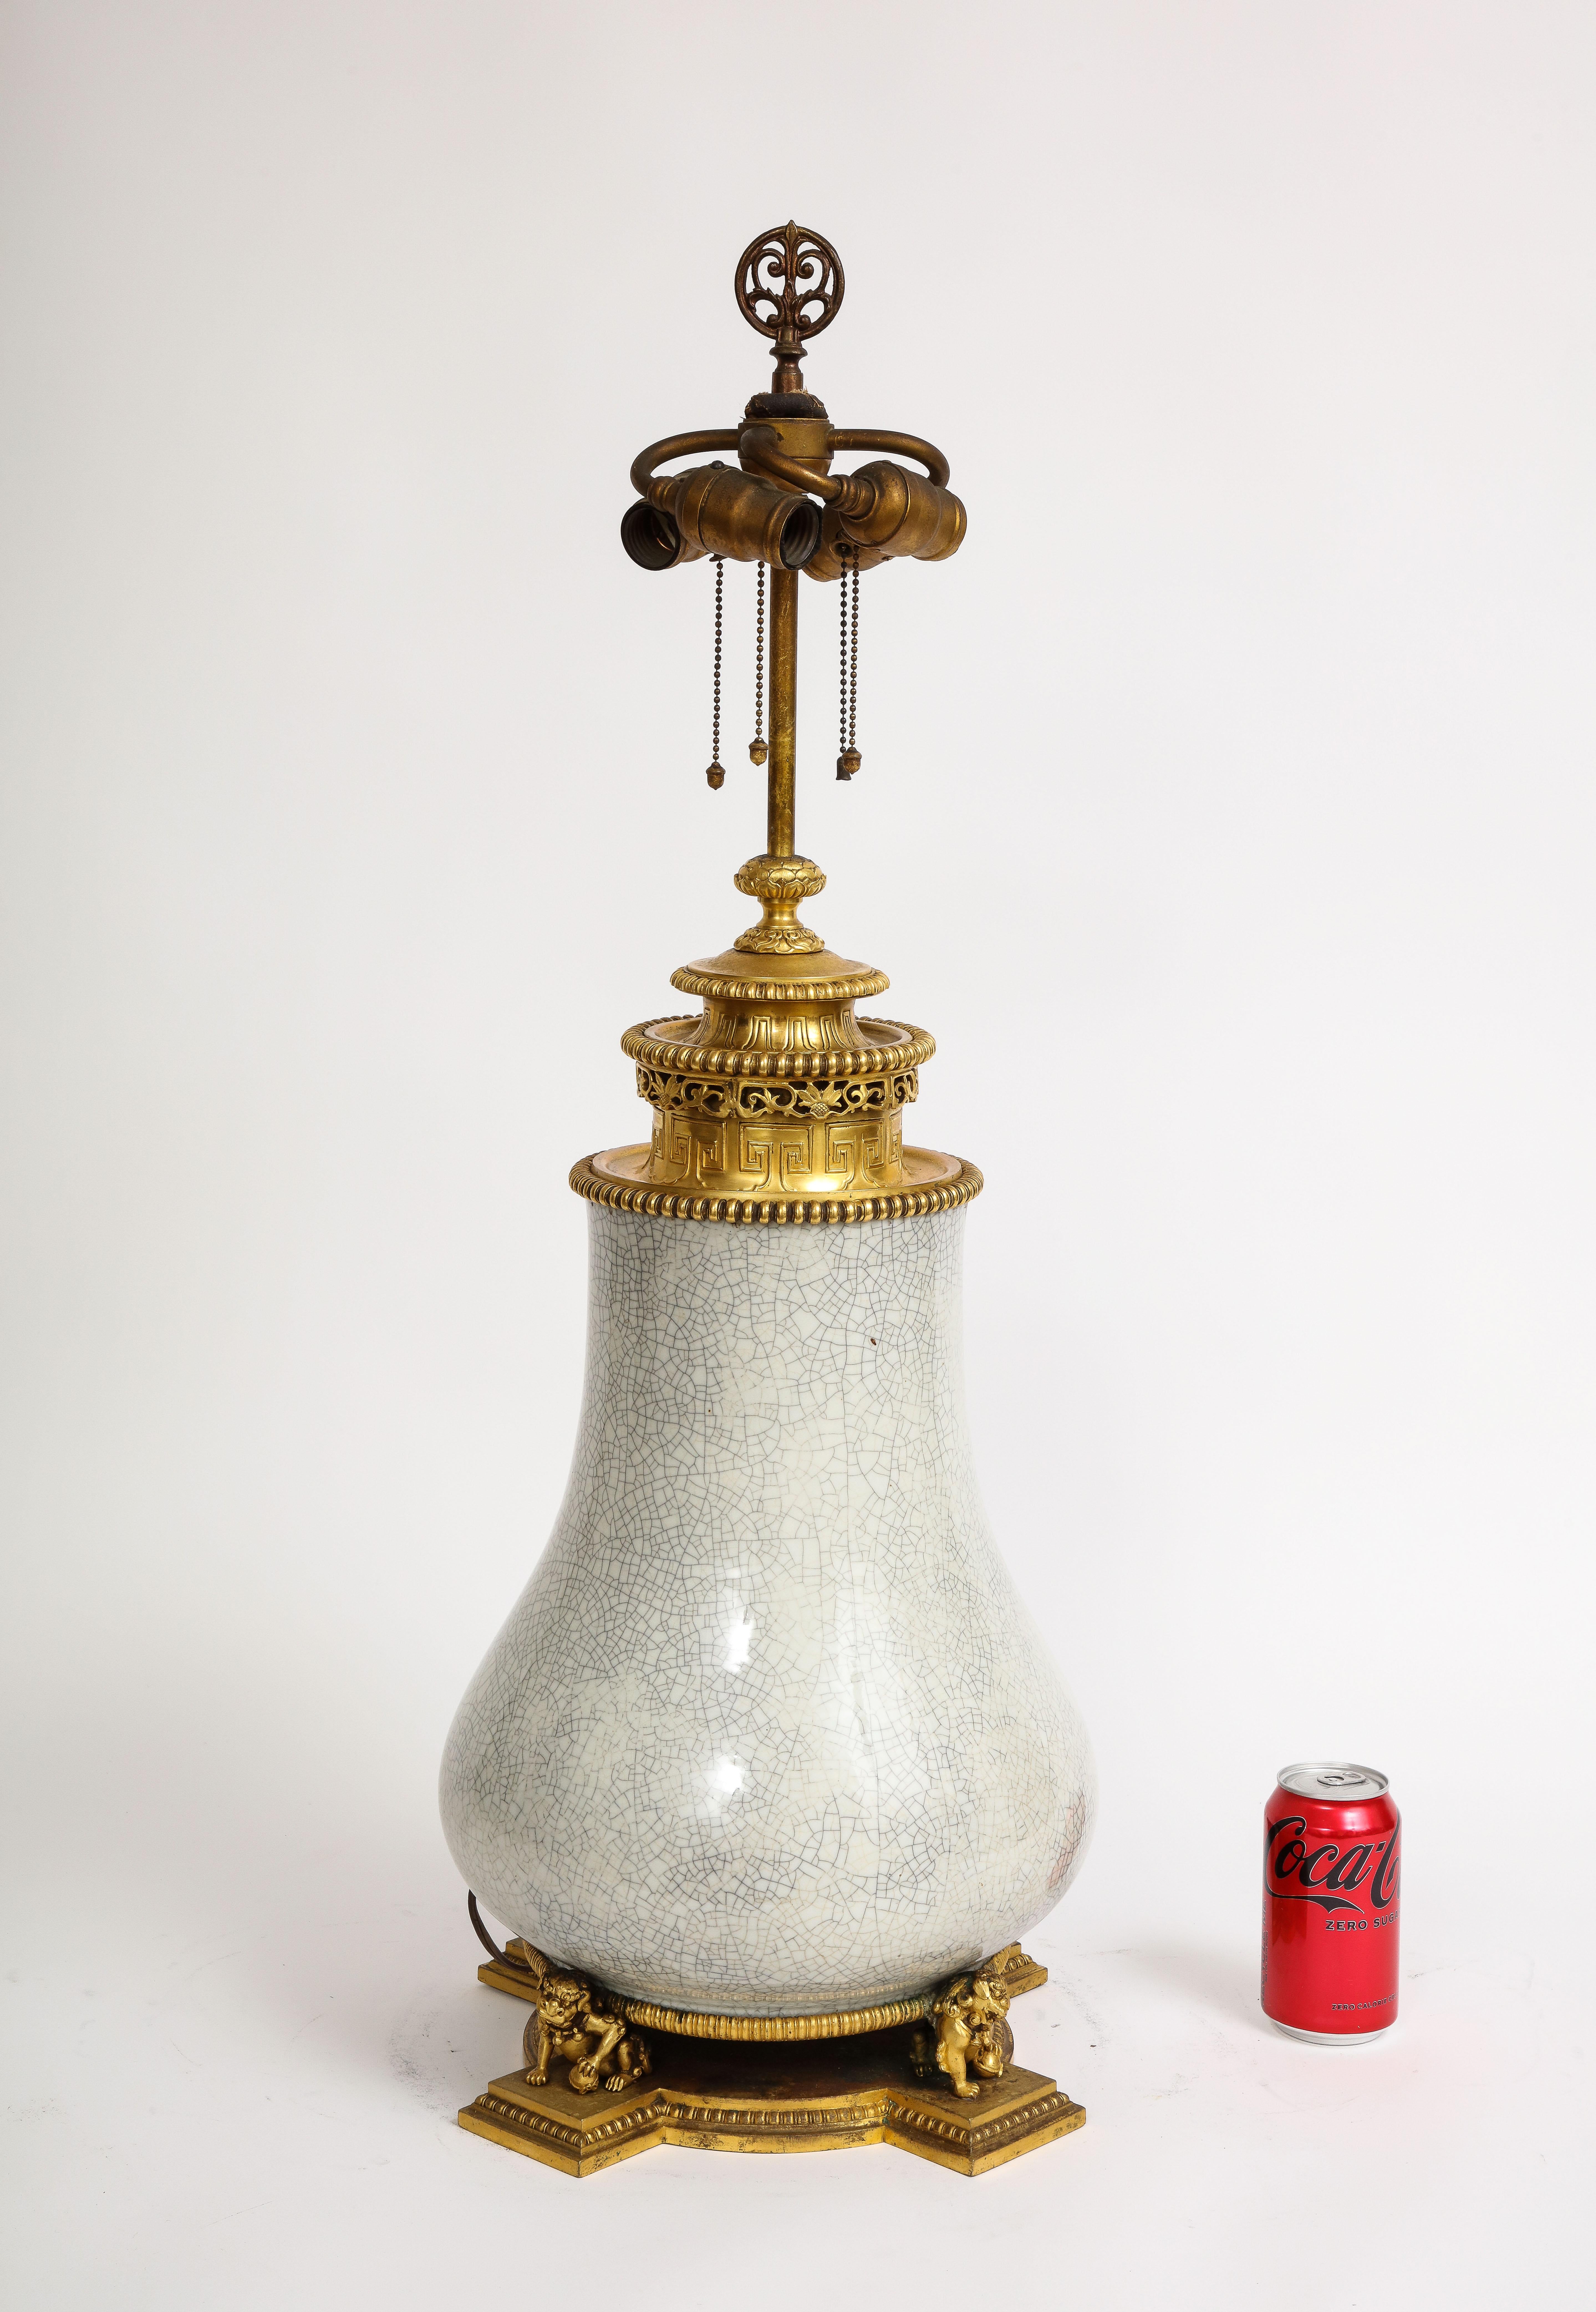 Incroyable et assez grand vase en porcelaine chinoise céladon craquelée, monté en bronze doré, monté en lampe, du 19e siècle, marqué E.F. Caldwell. Voici une lampe exceptionnelle du 19e siècle, mêlant magistralement l'artisanat chinois et américain,